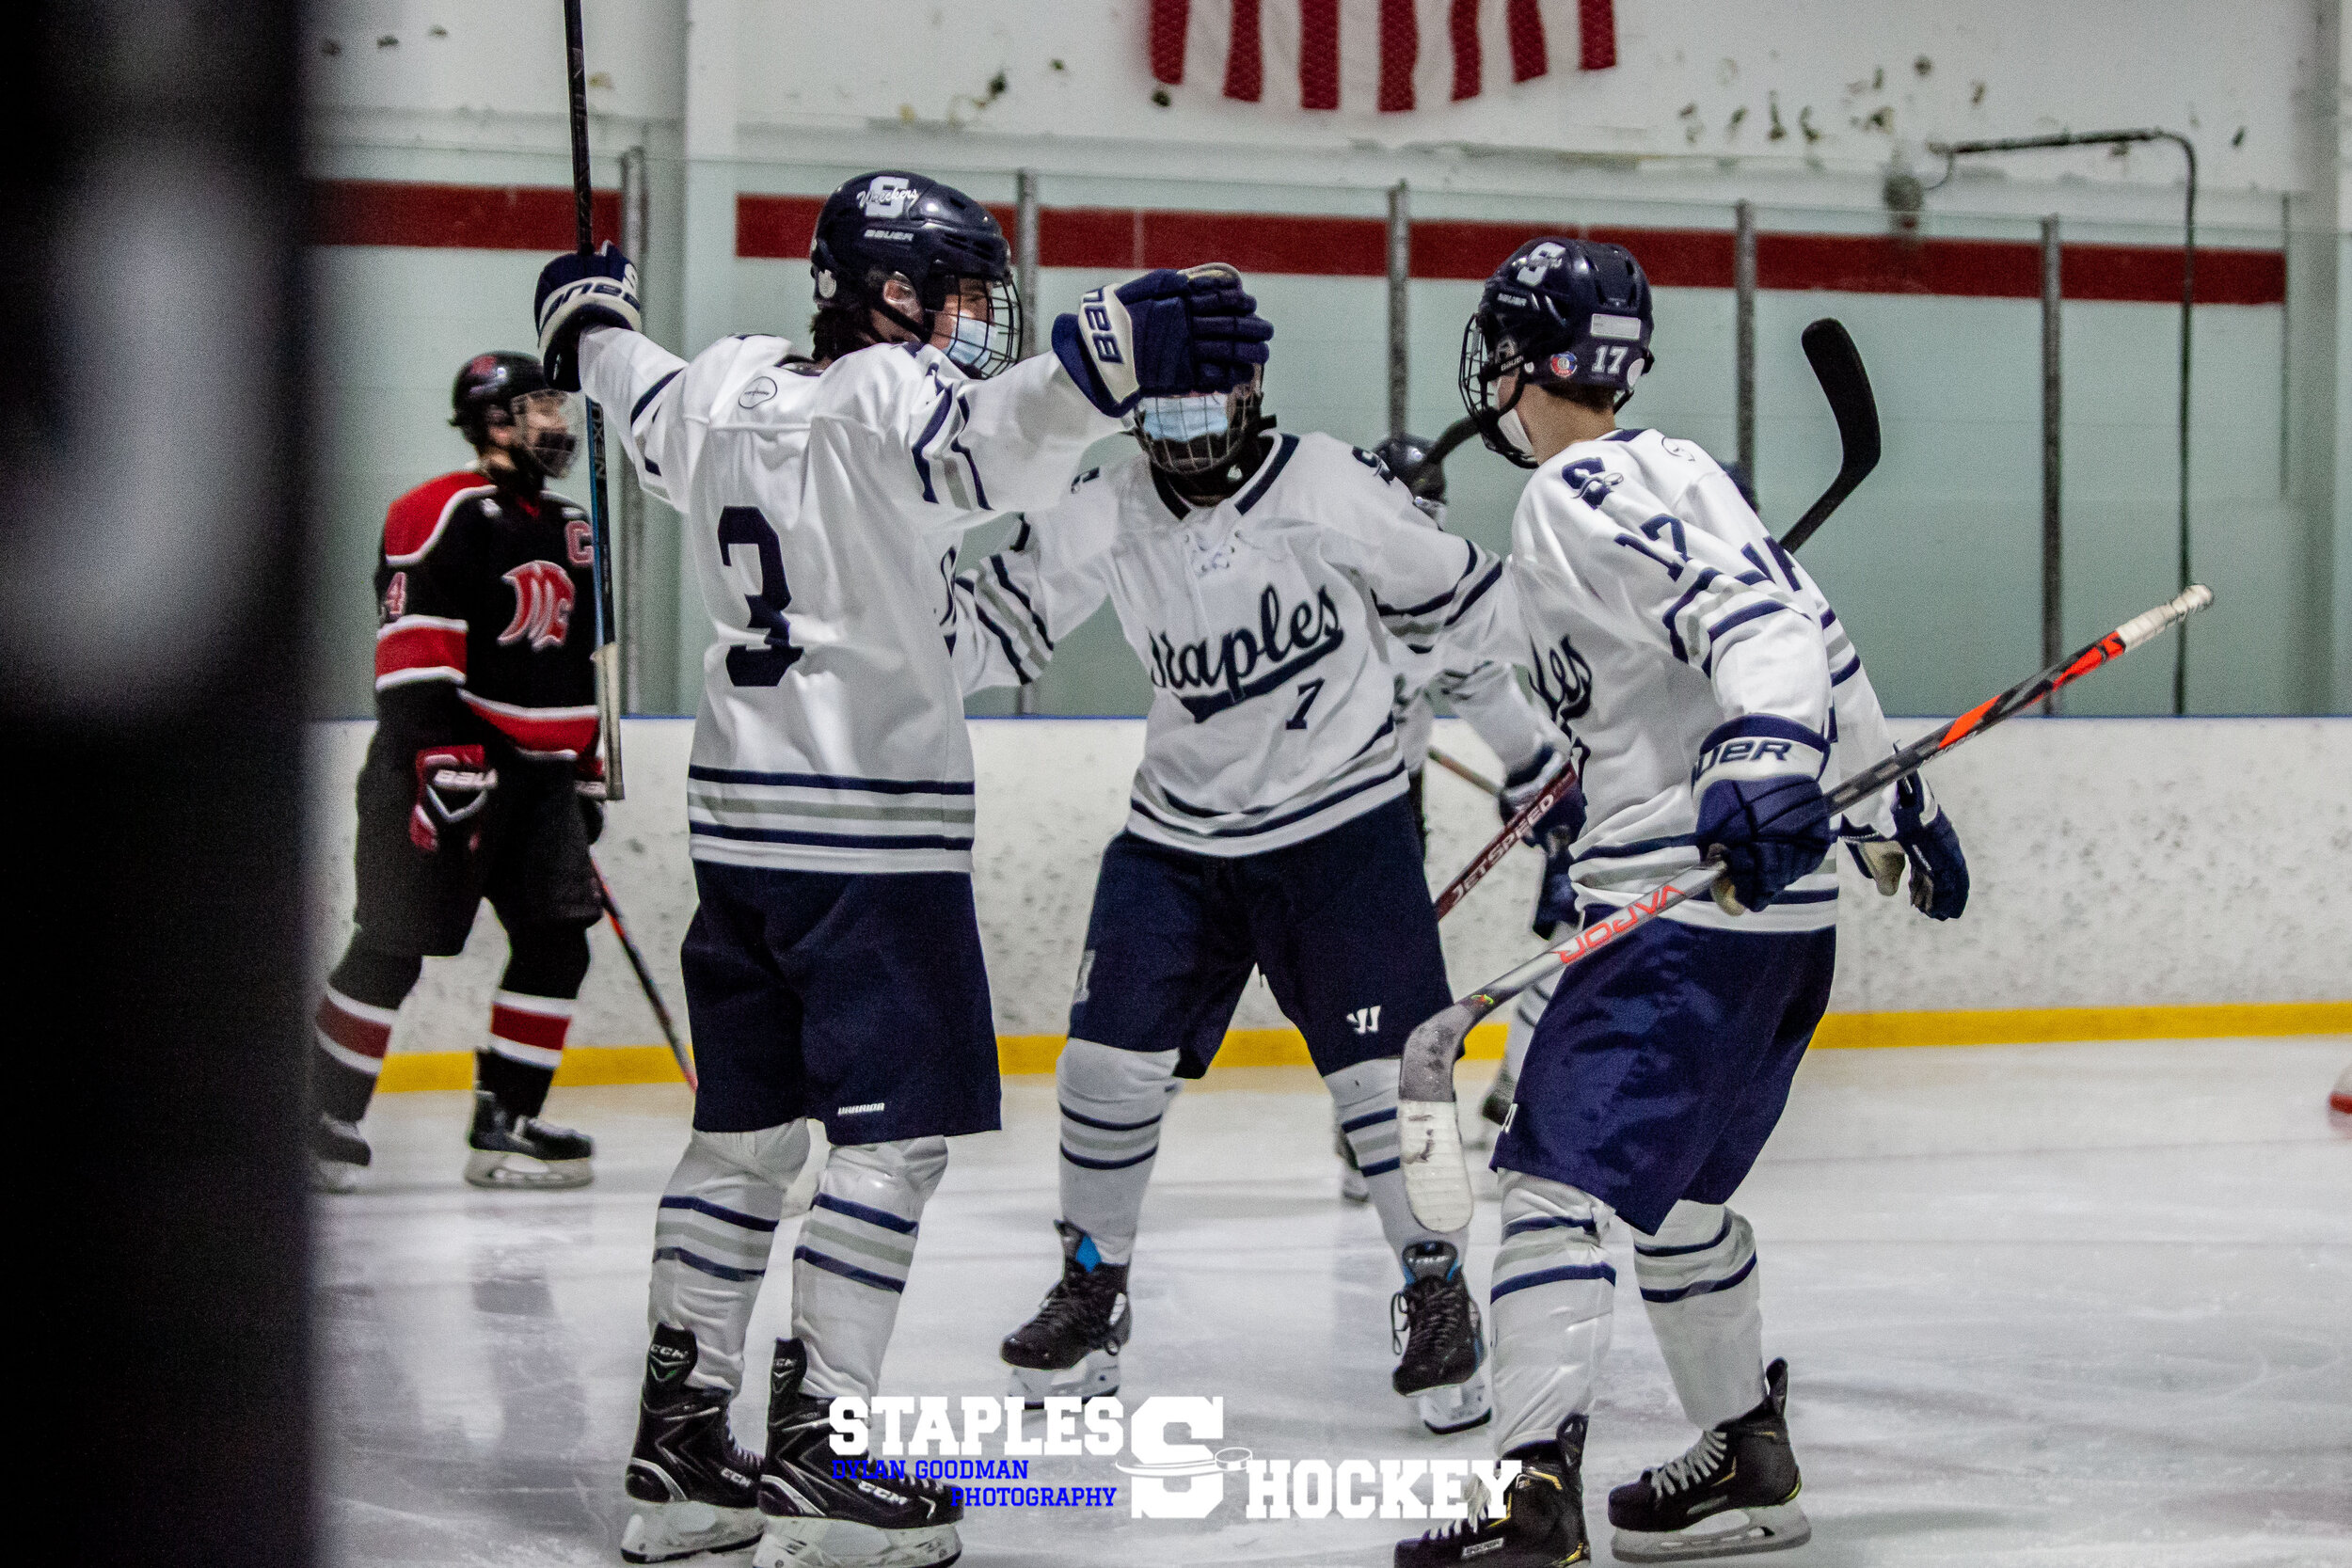 165-Staples Varsity Boys Hockey vs. Masuk - February 27, 2021 - Dylan Goodman Photography.jpg